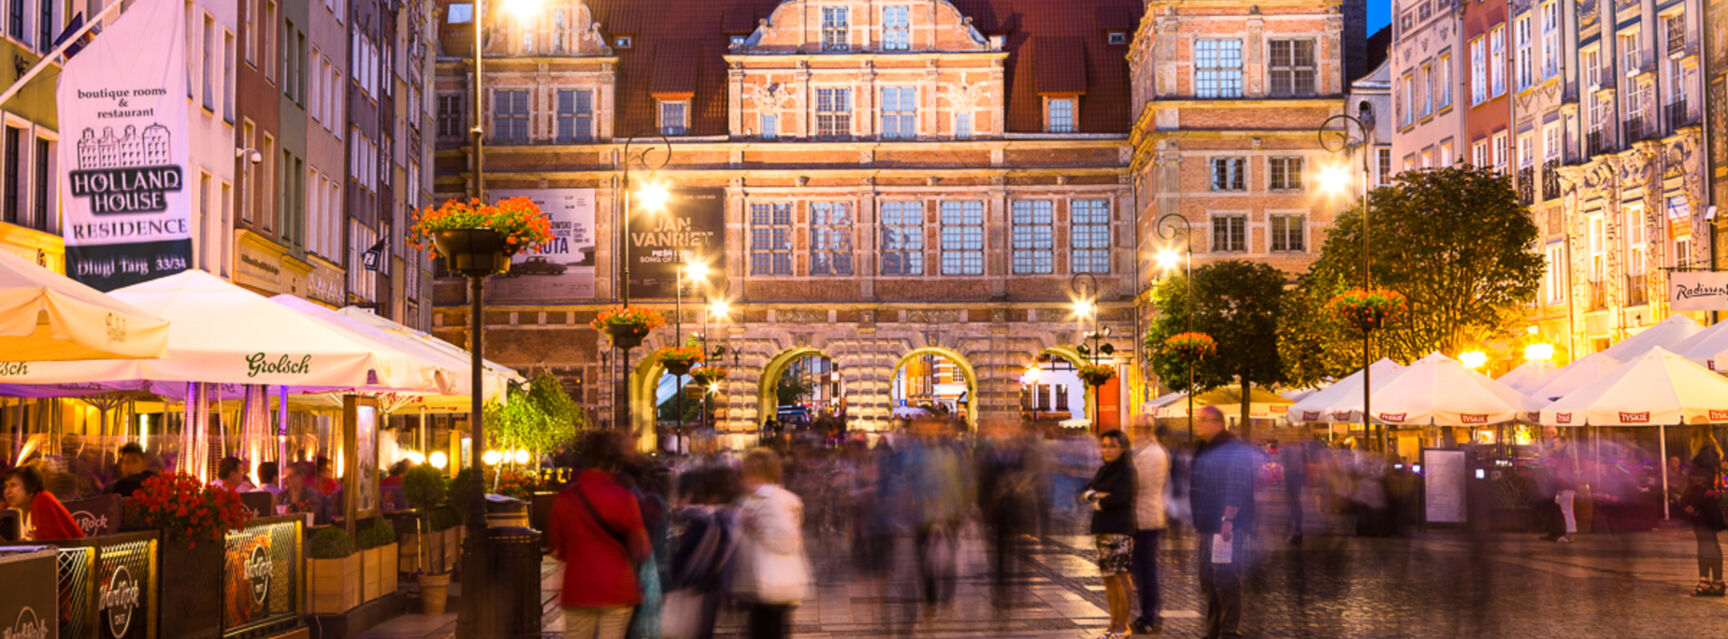 Langer Markt ©Visit Gdansk